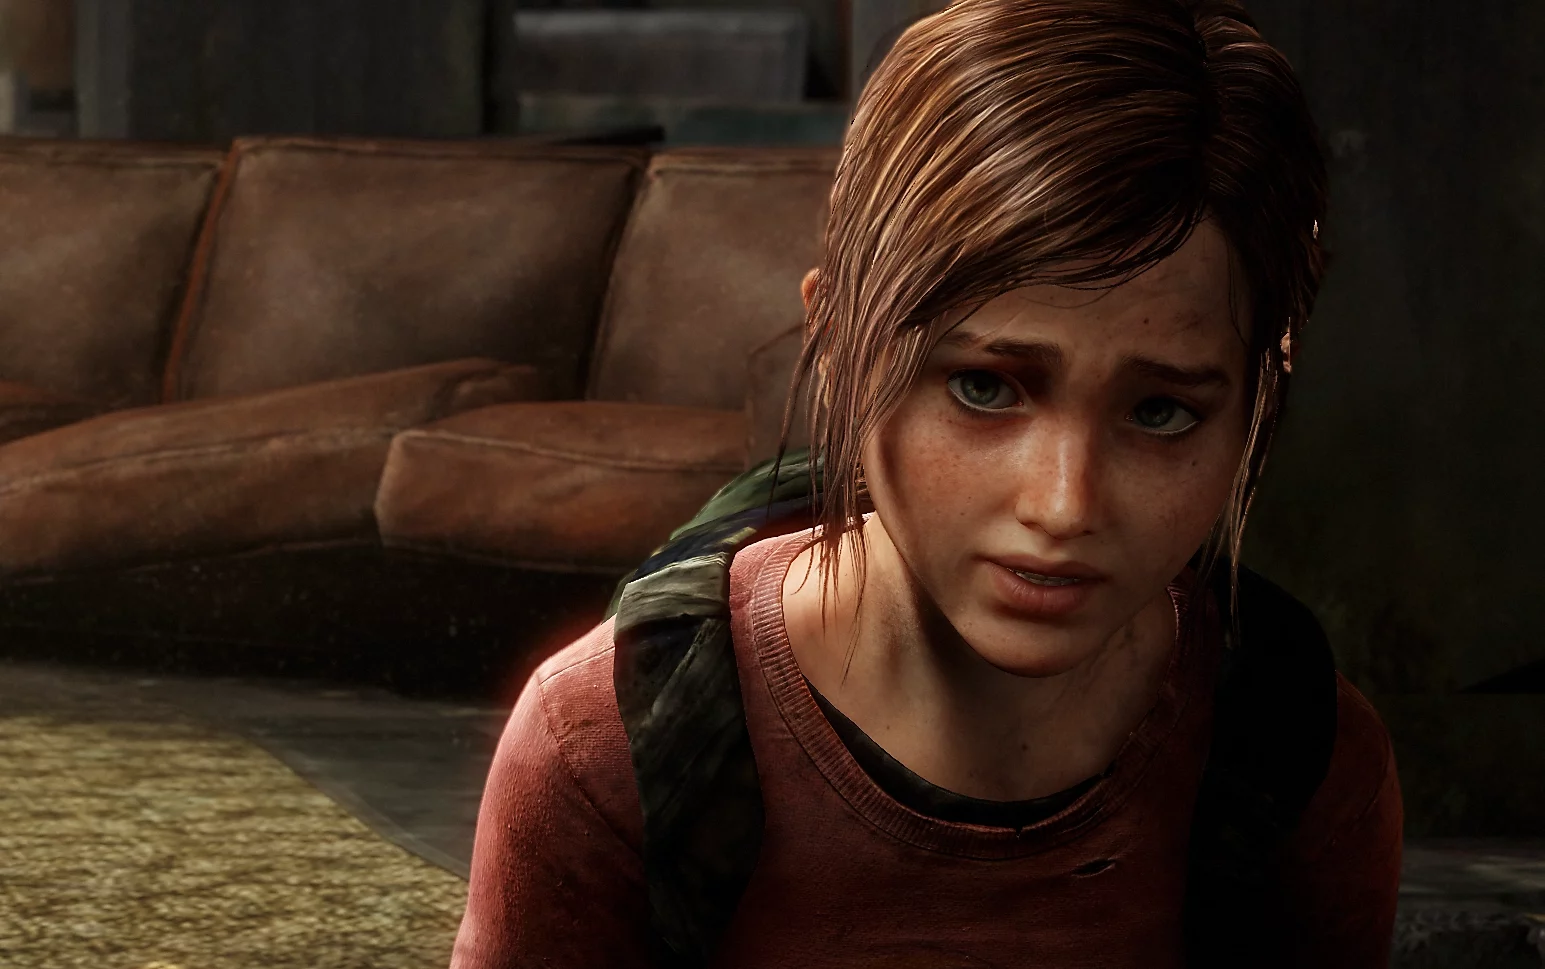 The Last of Us Part 1: Quais as melhorias do remake?